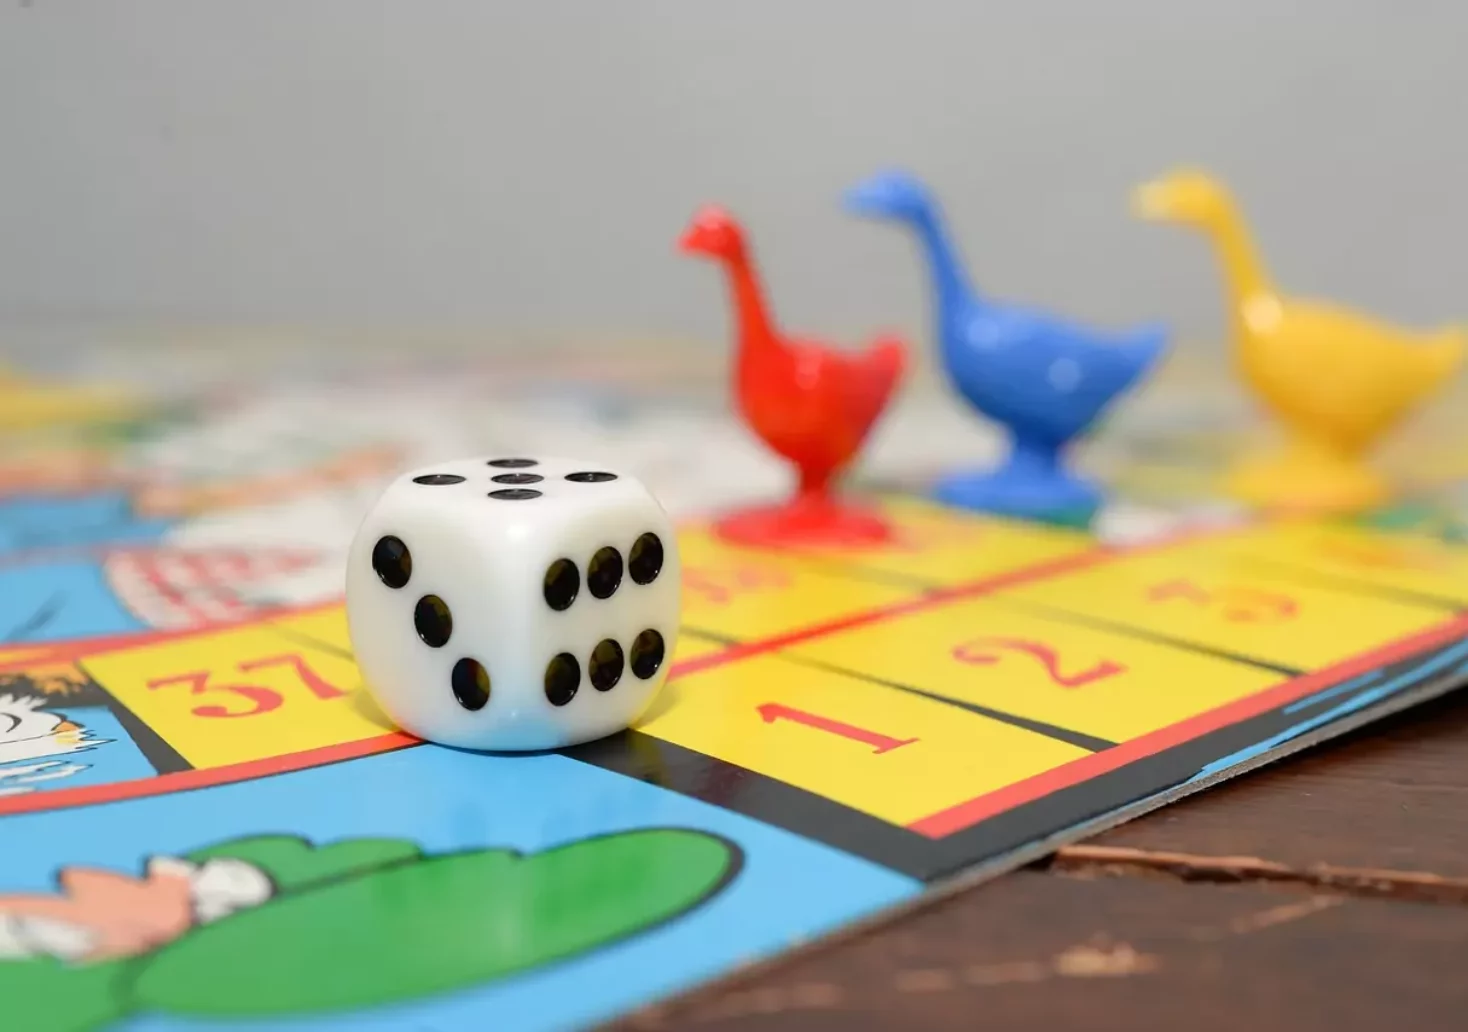 Ein Bild auf 5min.at zeigt ein Brettspiel. Die Spielfiguren bestehen aus bunten Gänsen und ein Würfel liegt am Spielbrett.